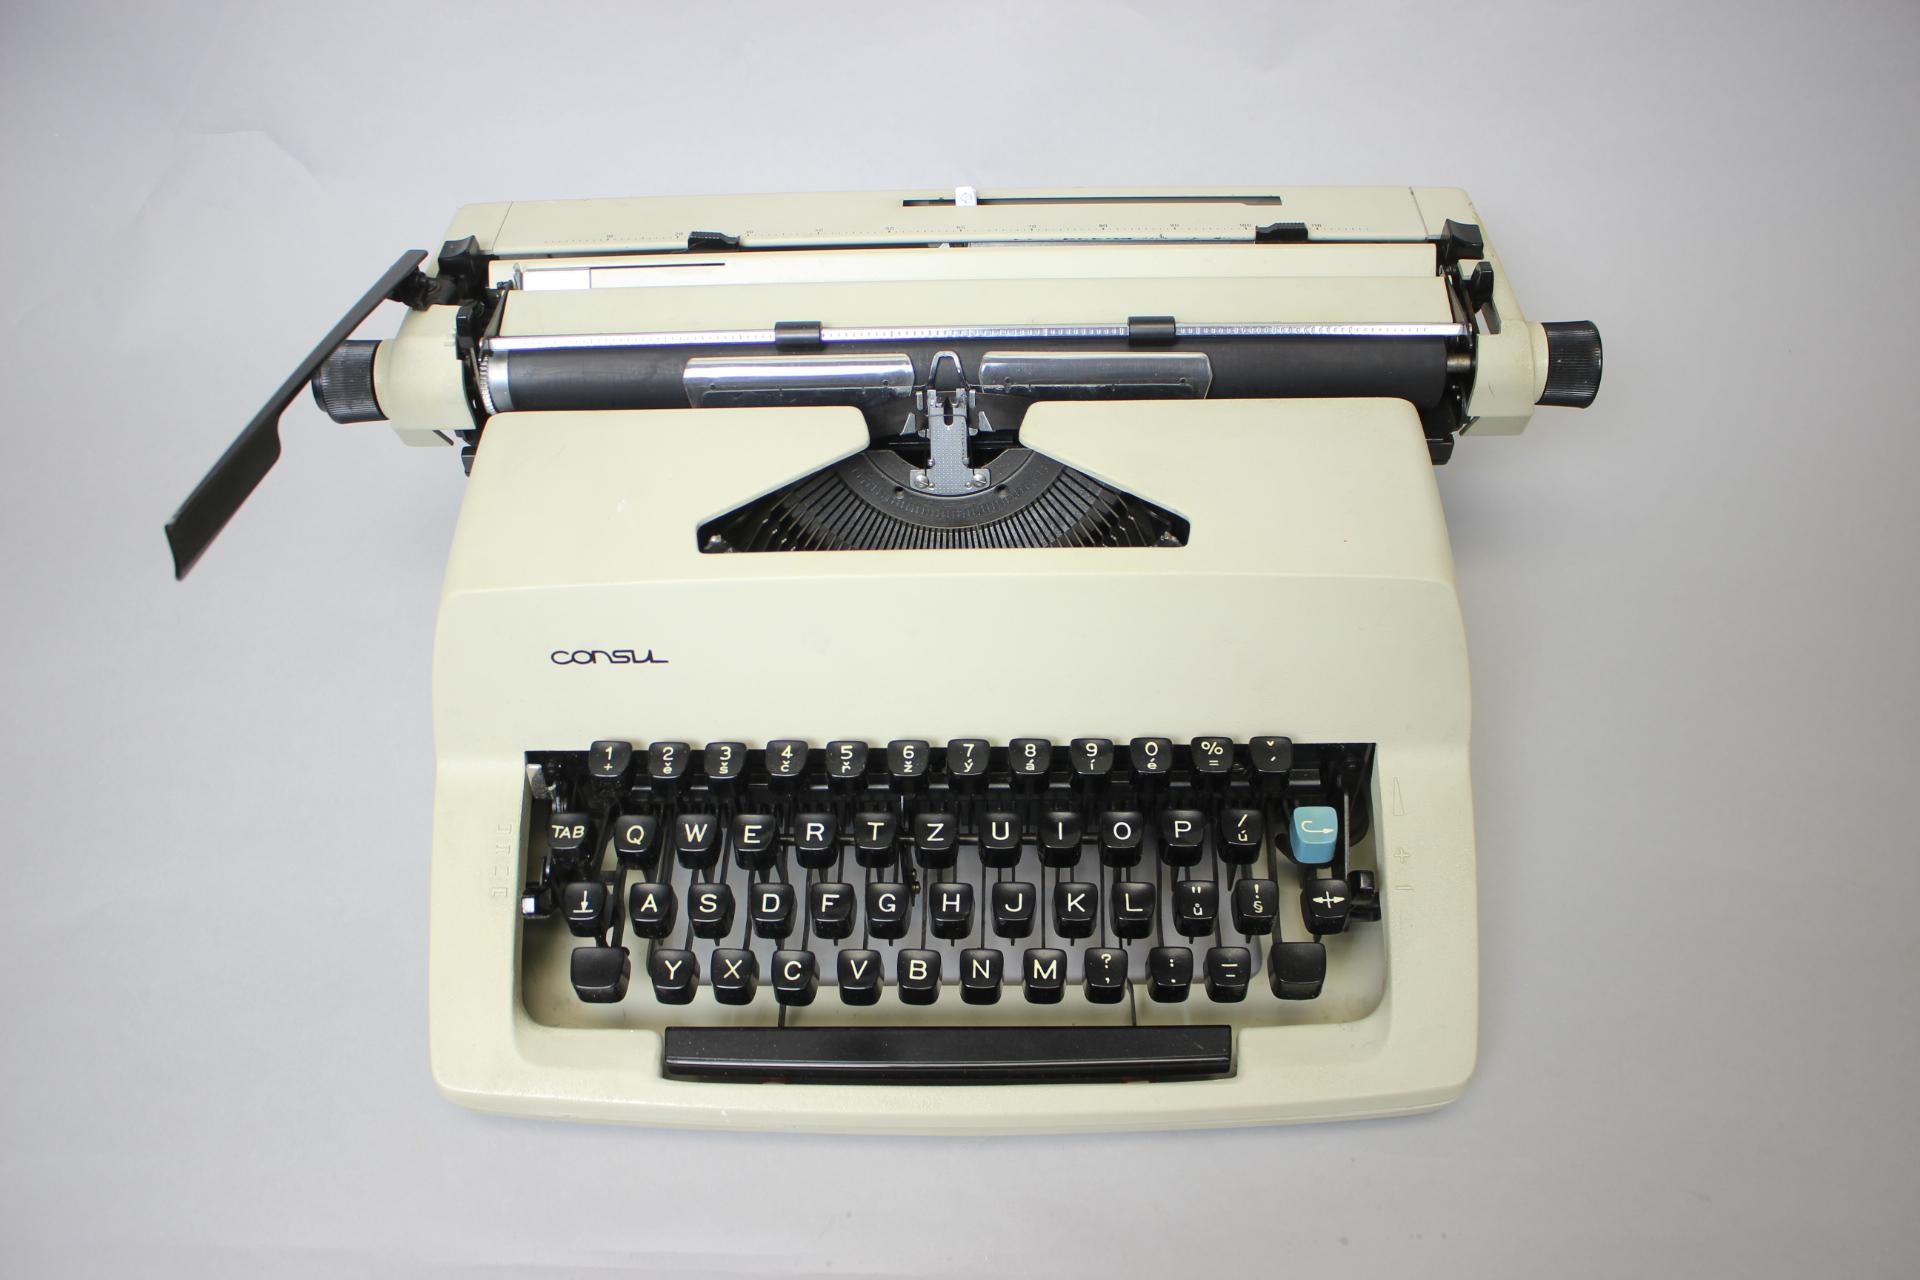 consul typewriter